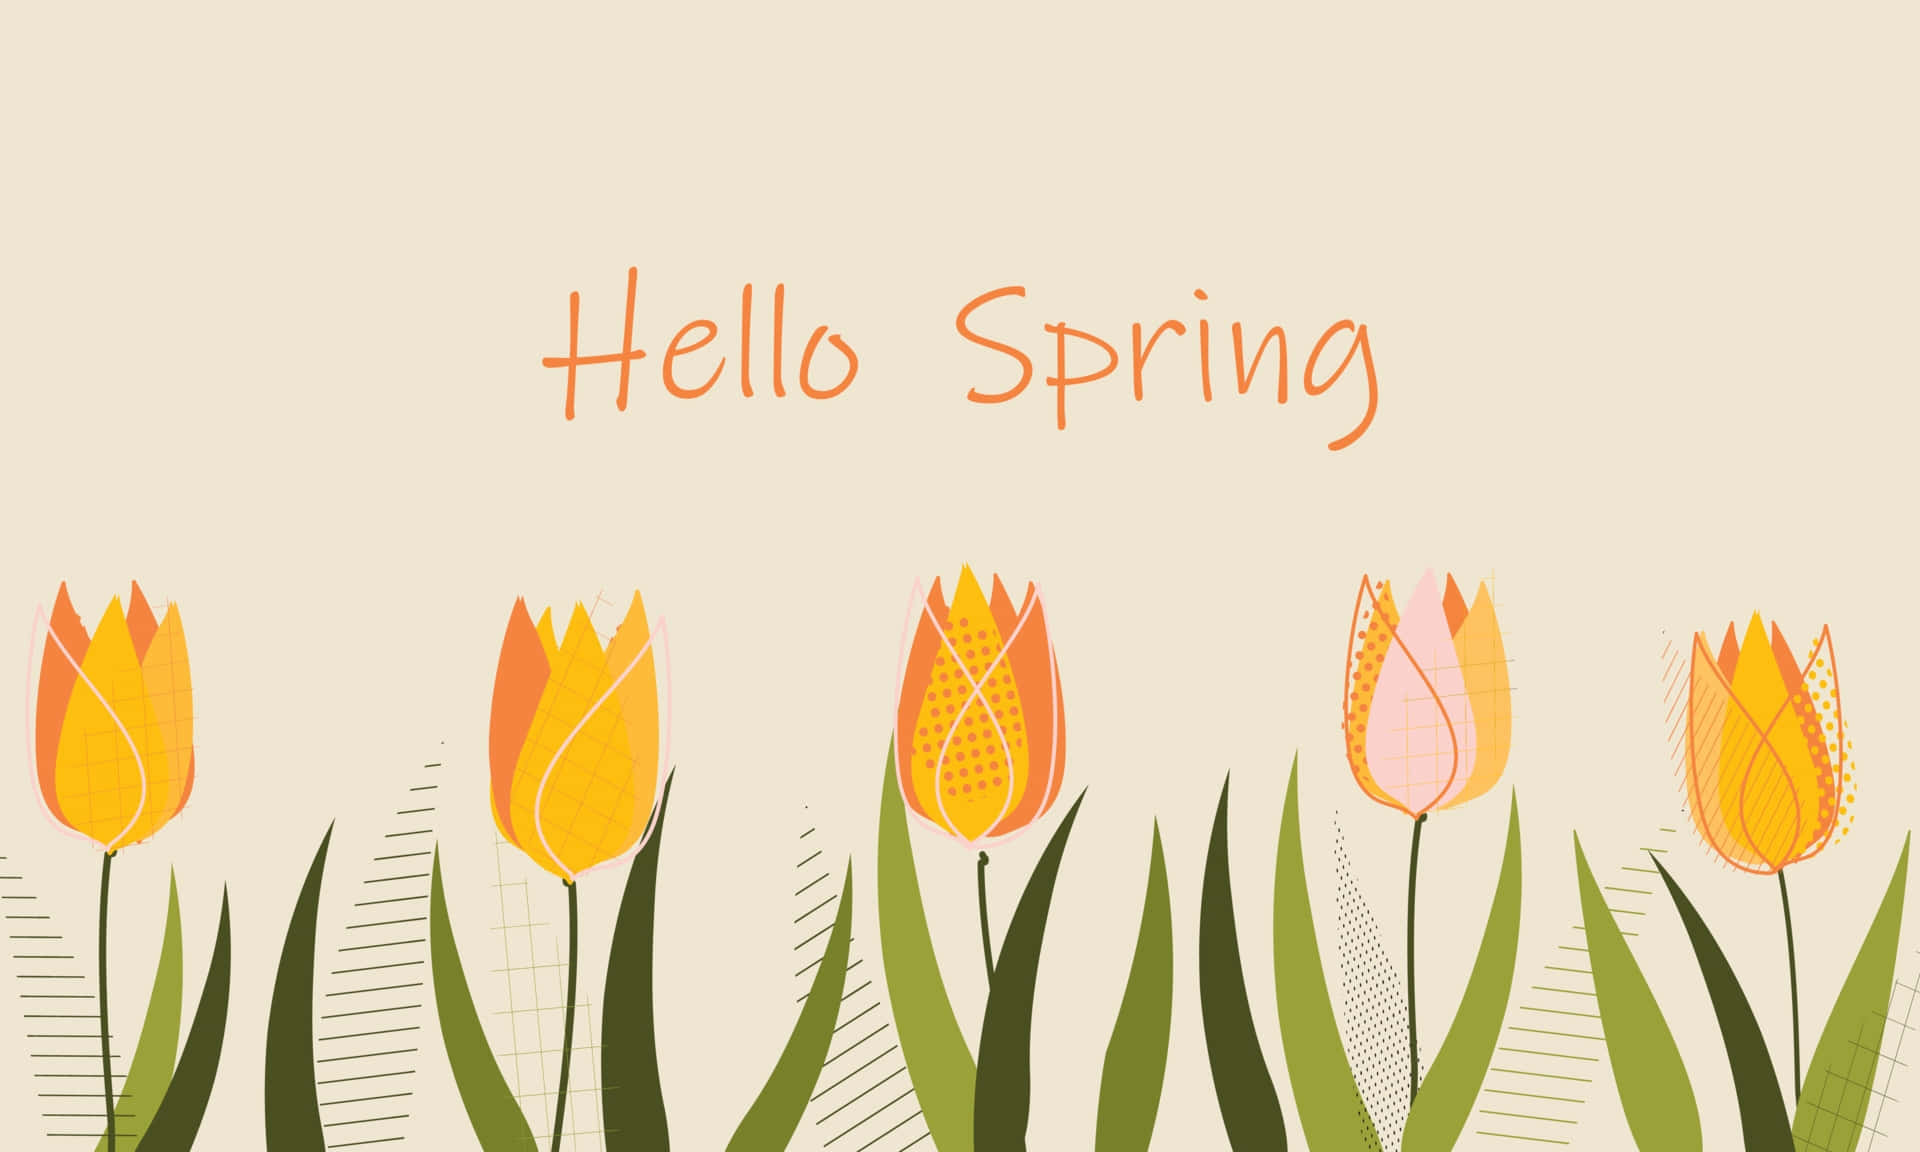 Hello Spring Wallpaper